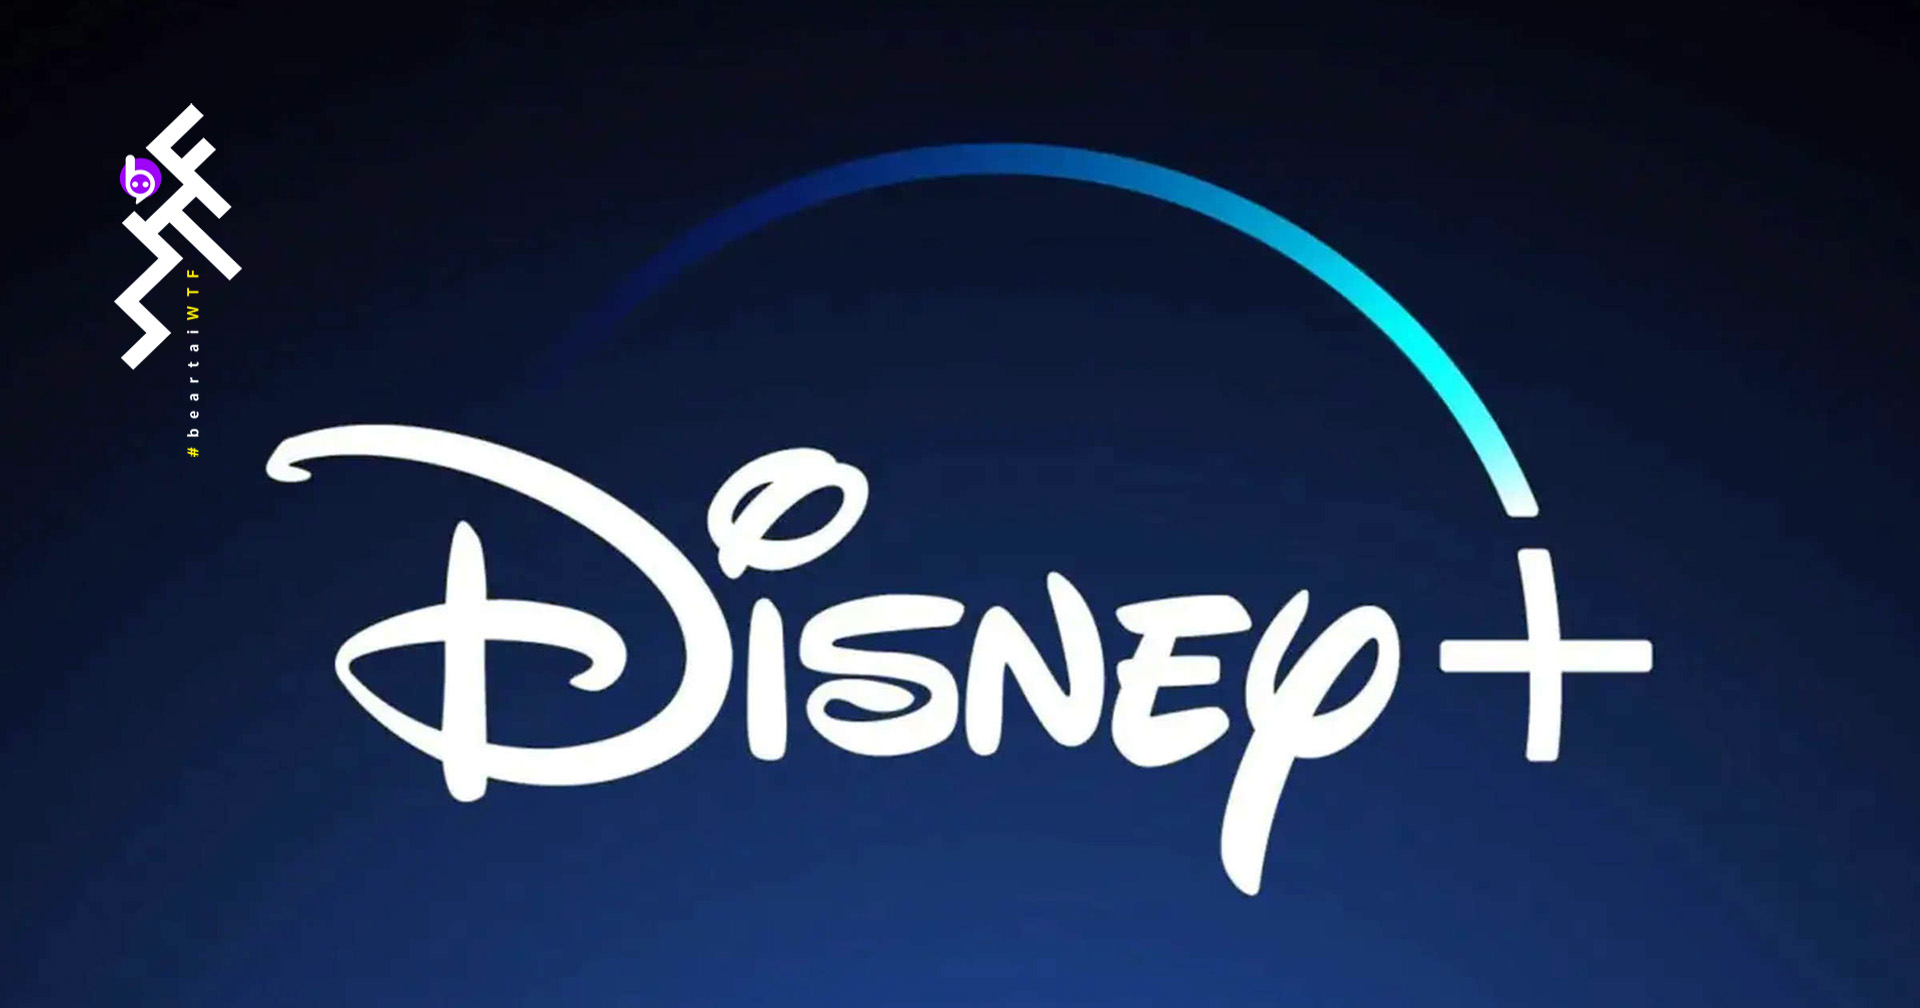 Disney+ มีผู้สมัครบริการถึง 73 ล้านคน ในปีแรก